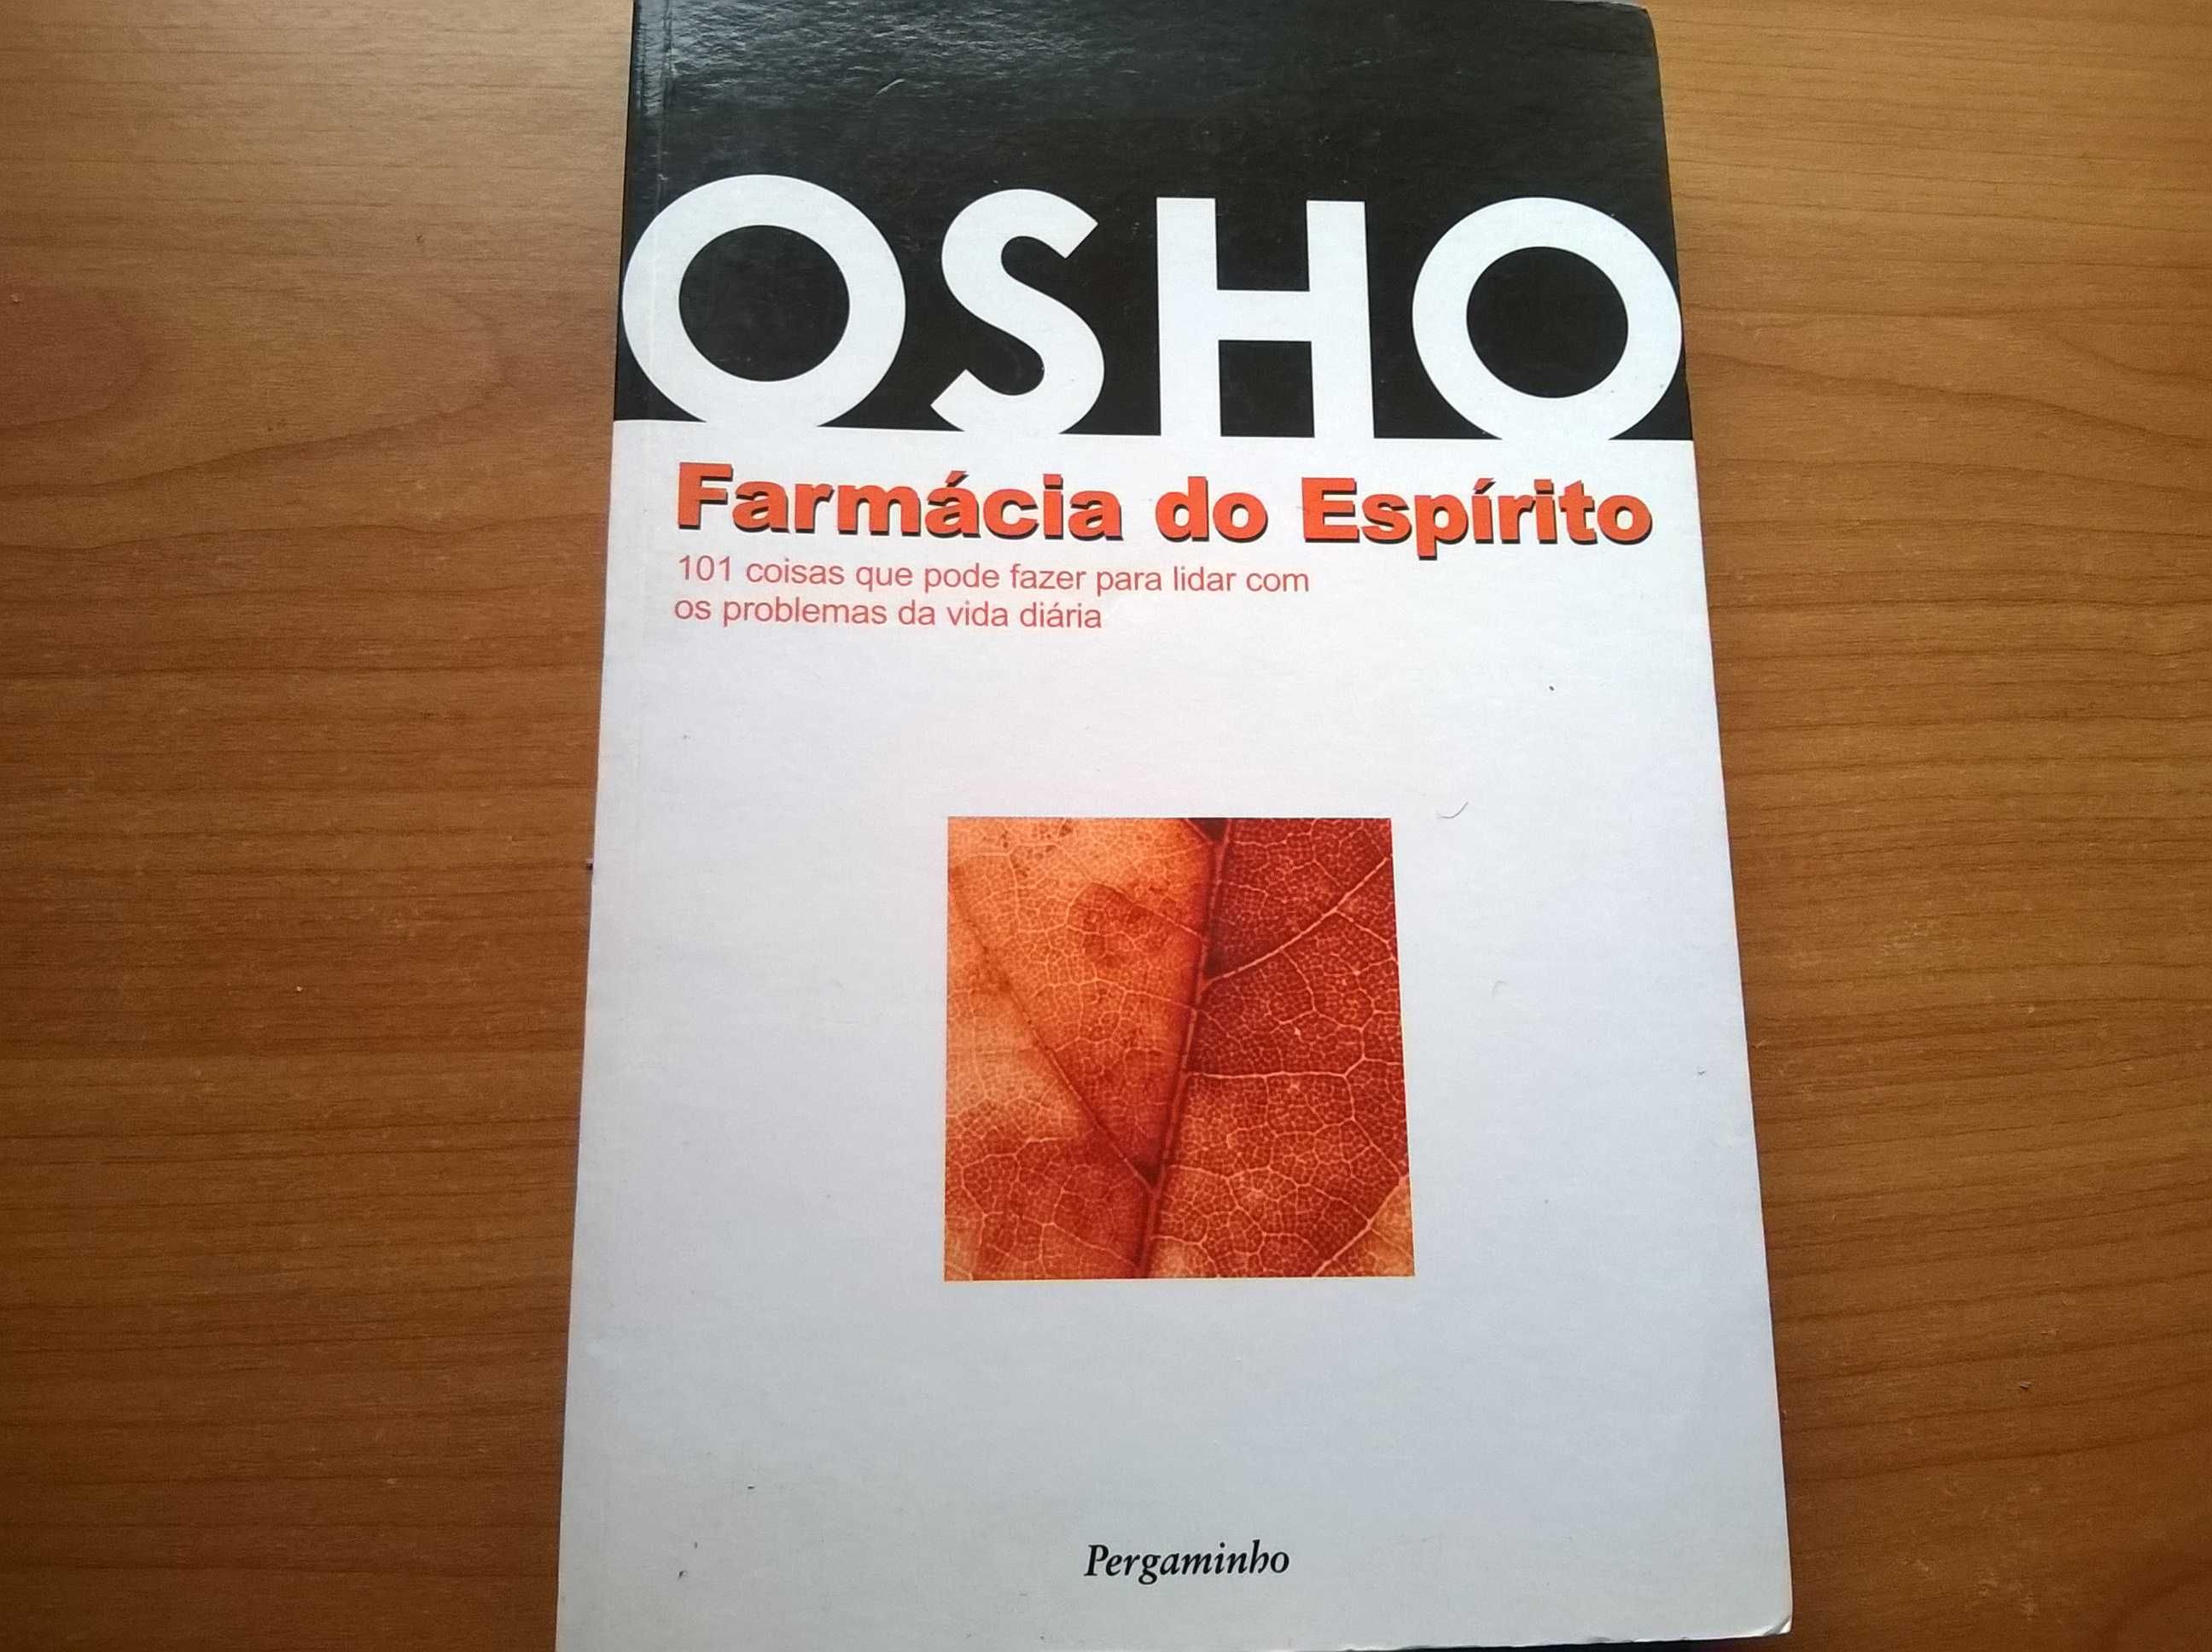 OSHO Farmácia do Espírito - Palavras de Osho